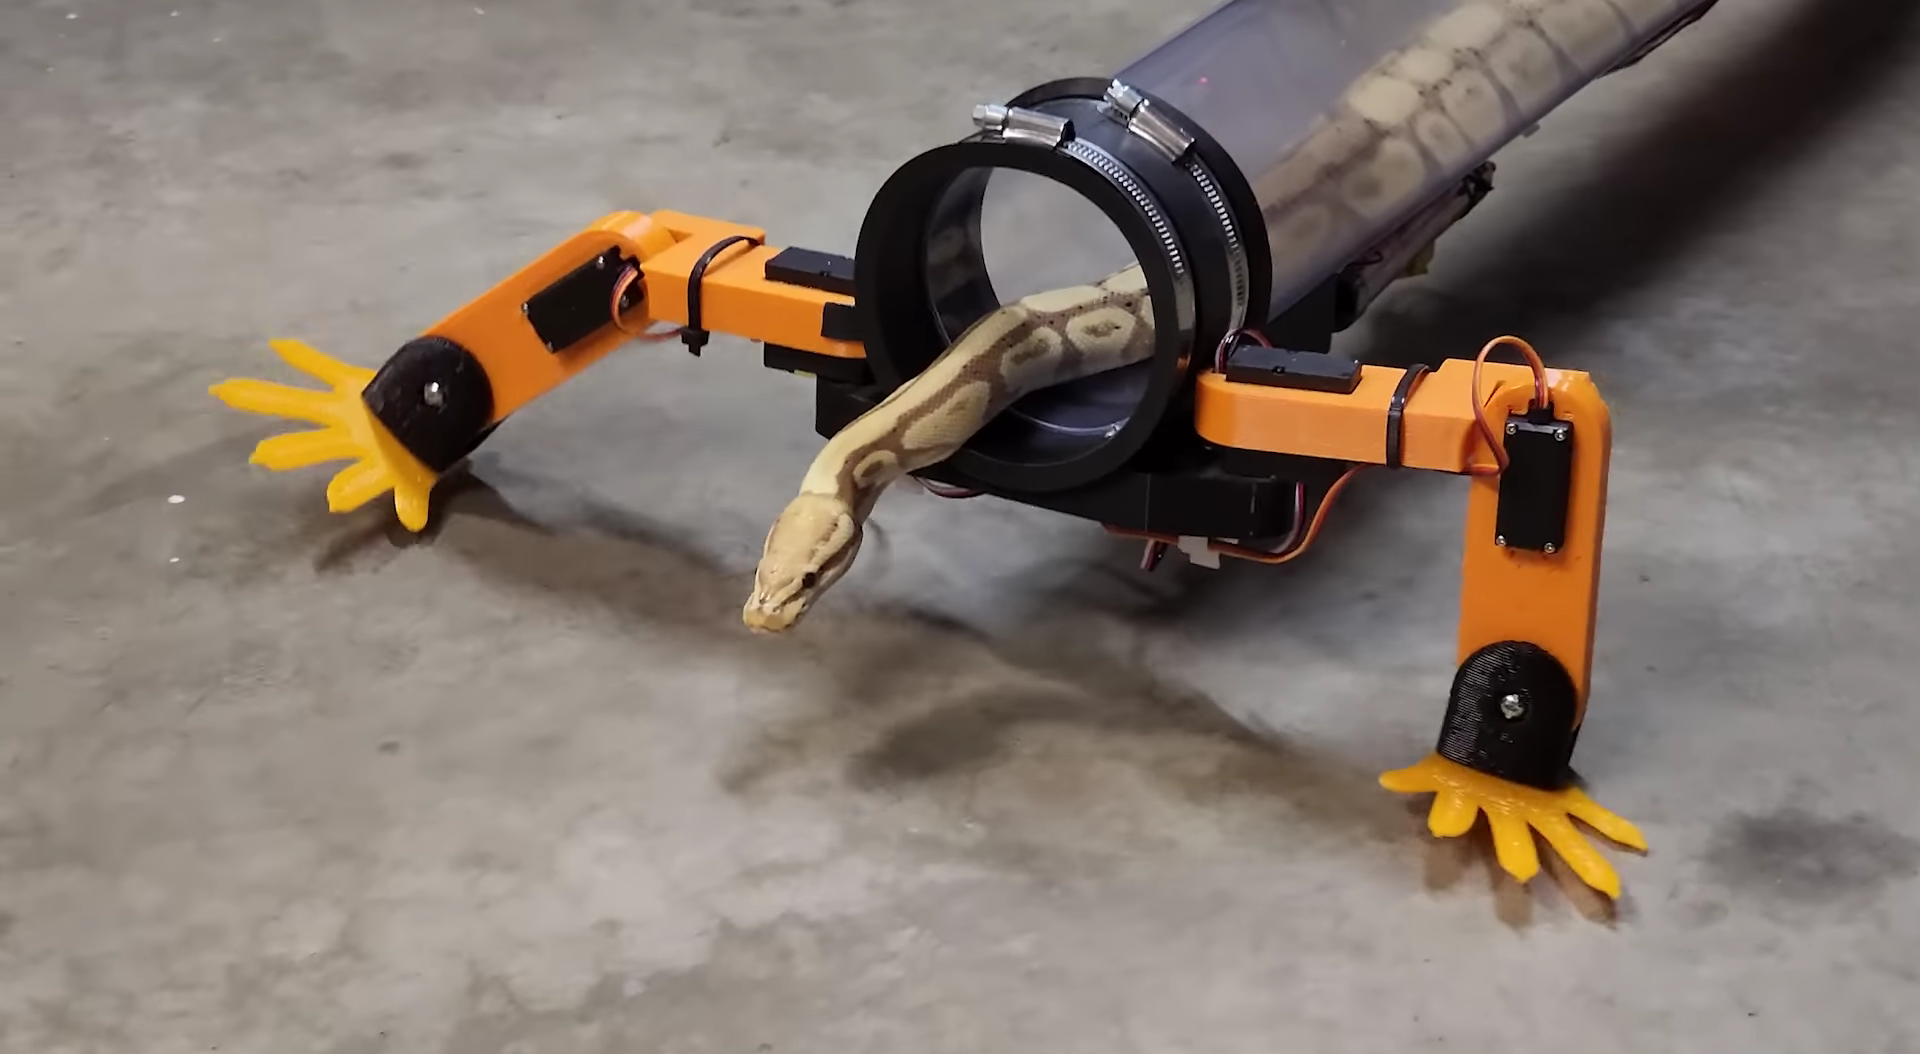 Ingenieur entwarf Roboterbeine für eine Schlange - sie mochte sie